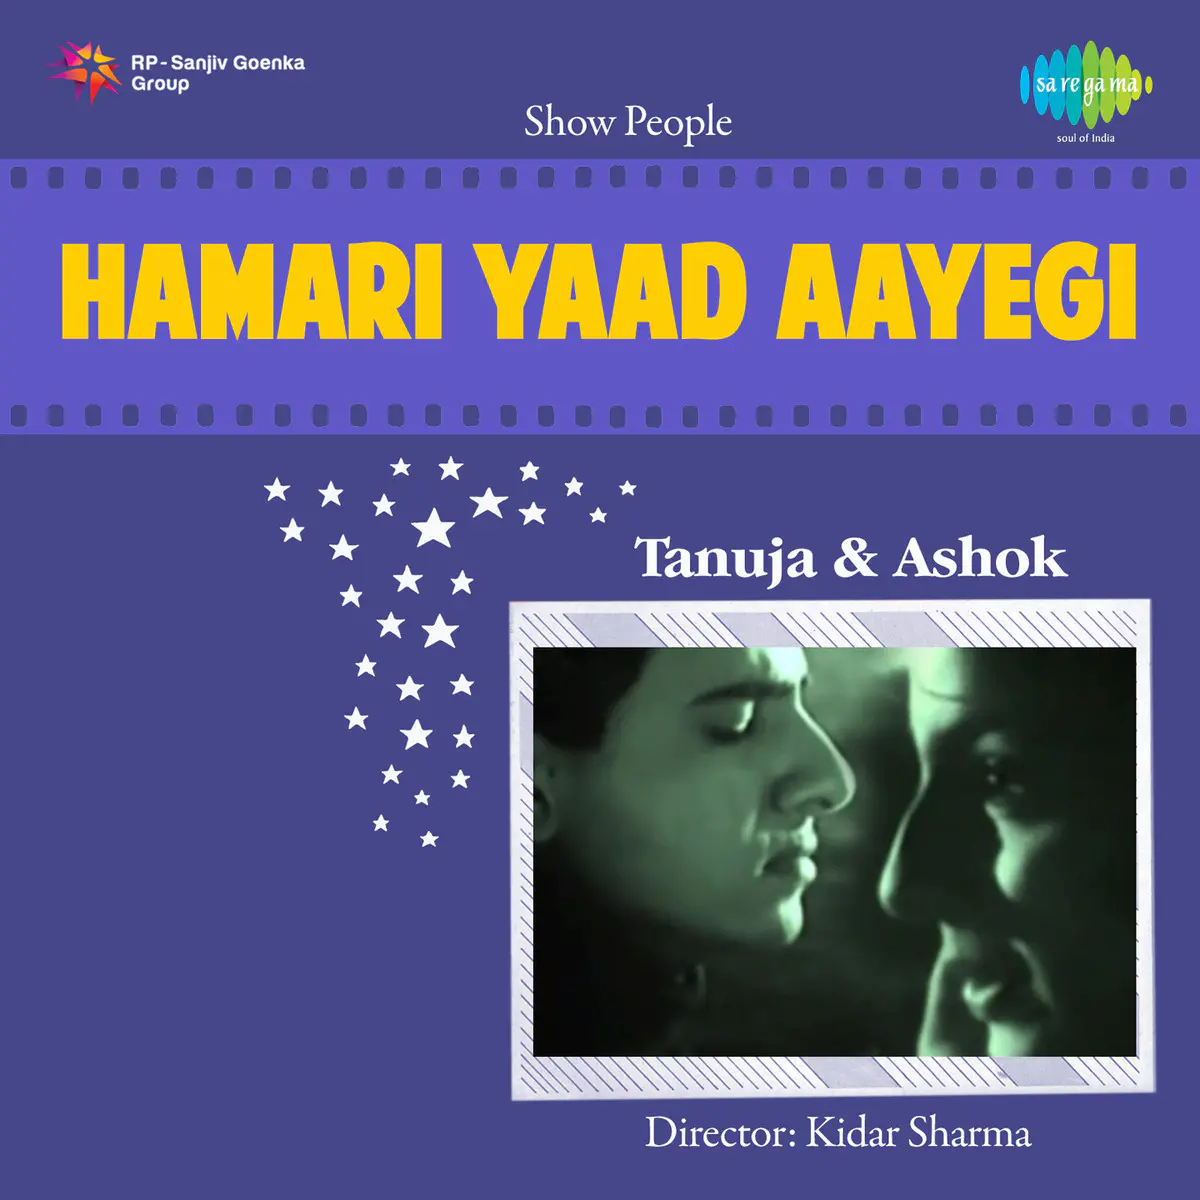 Hamari Yaad Aayegi Songs Download Hamari Yaad Aayegi Mp3 Songs Online Free On Gaana Com